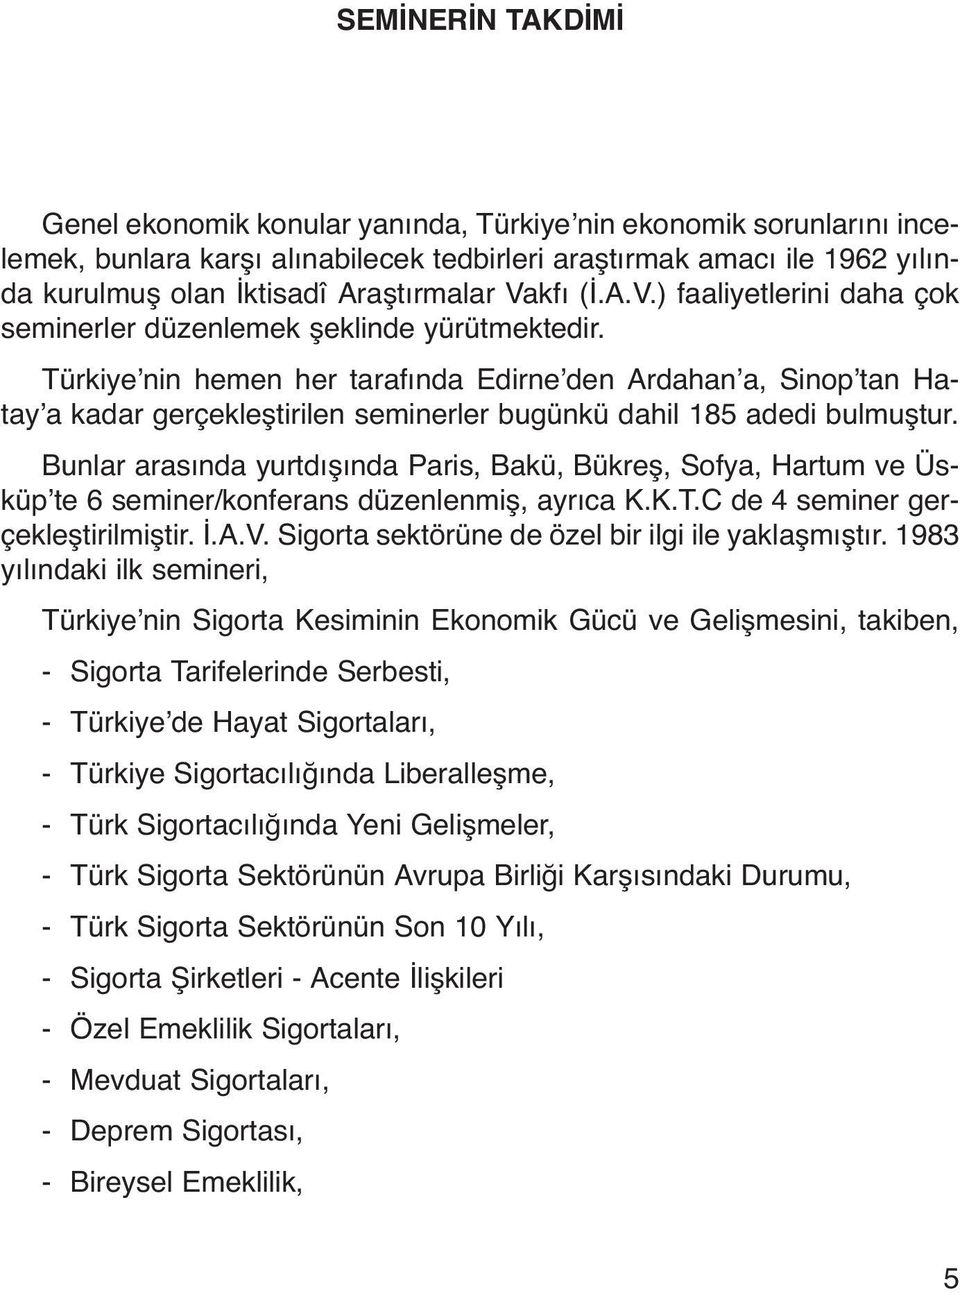 Türkiye nin hemen her tarafında Edirne den Ardahan a, Sinop tan Hatay a kadar gerçekleştirilen seminerler bugünkü dahil 185 adedi bulmuştur.